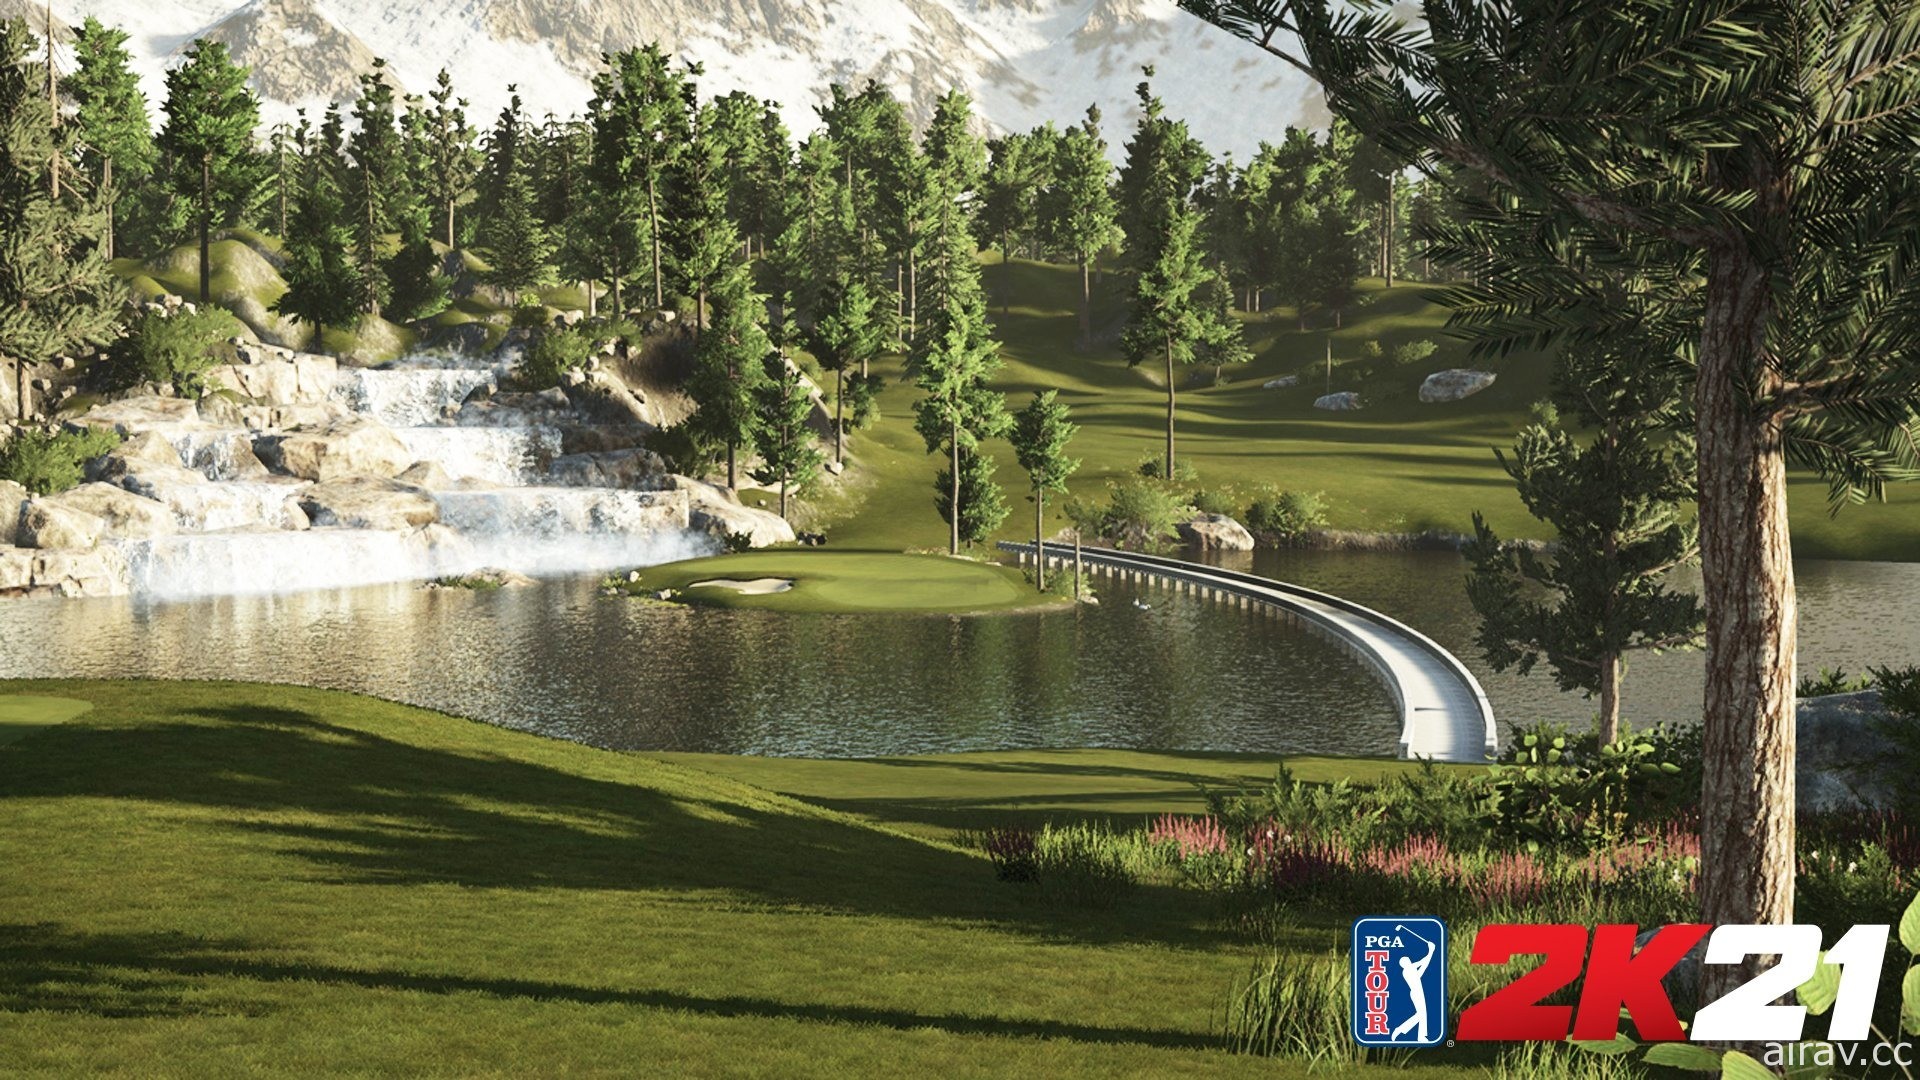 《PGA 巡回赛 2K21》征召社群球场创造者来增进多人游戏体验